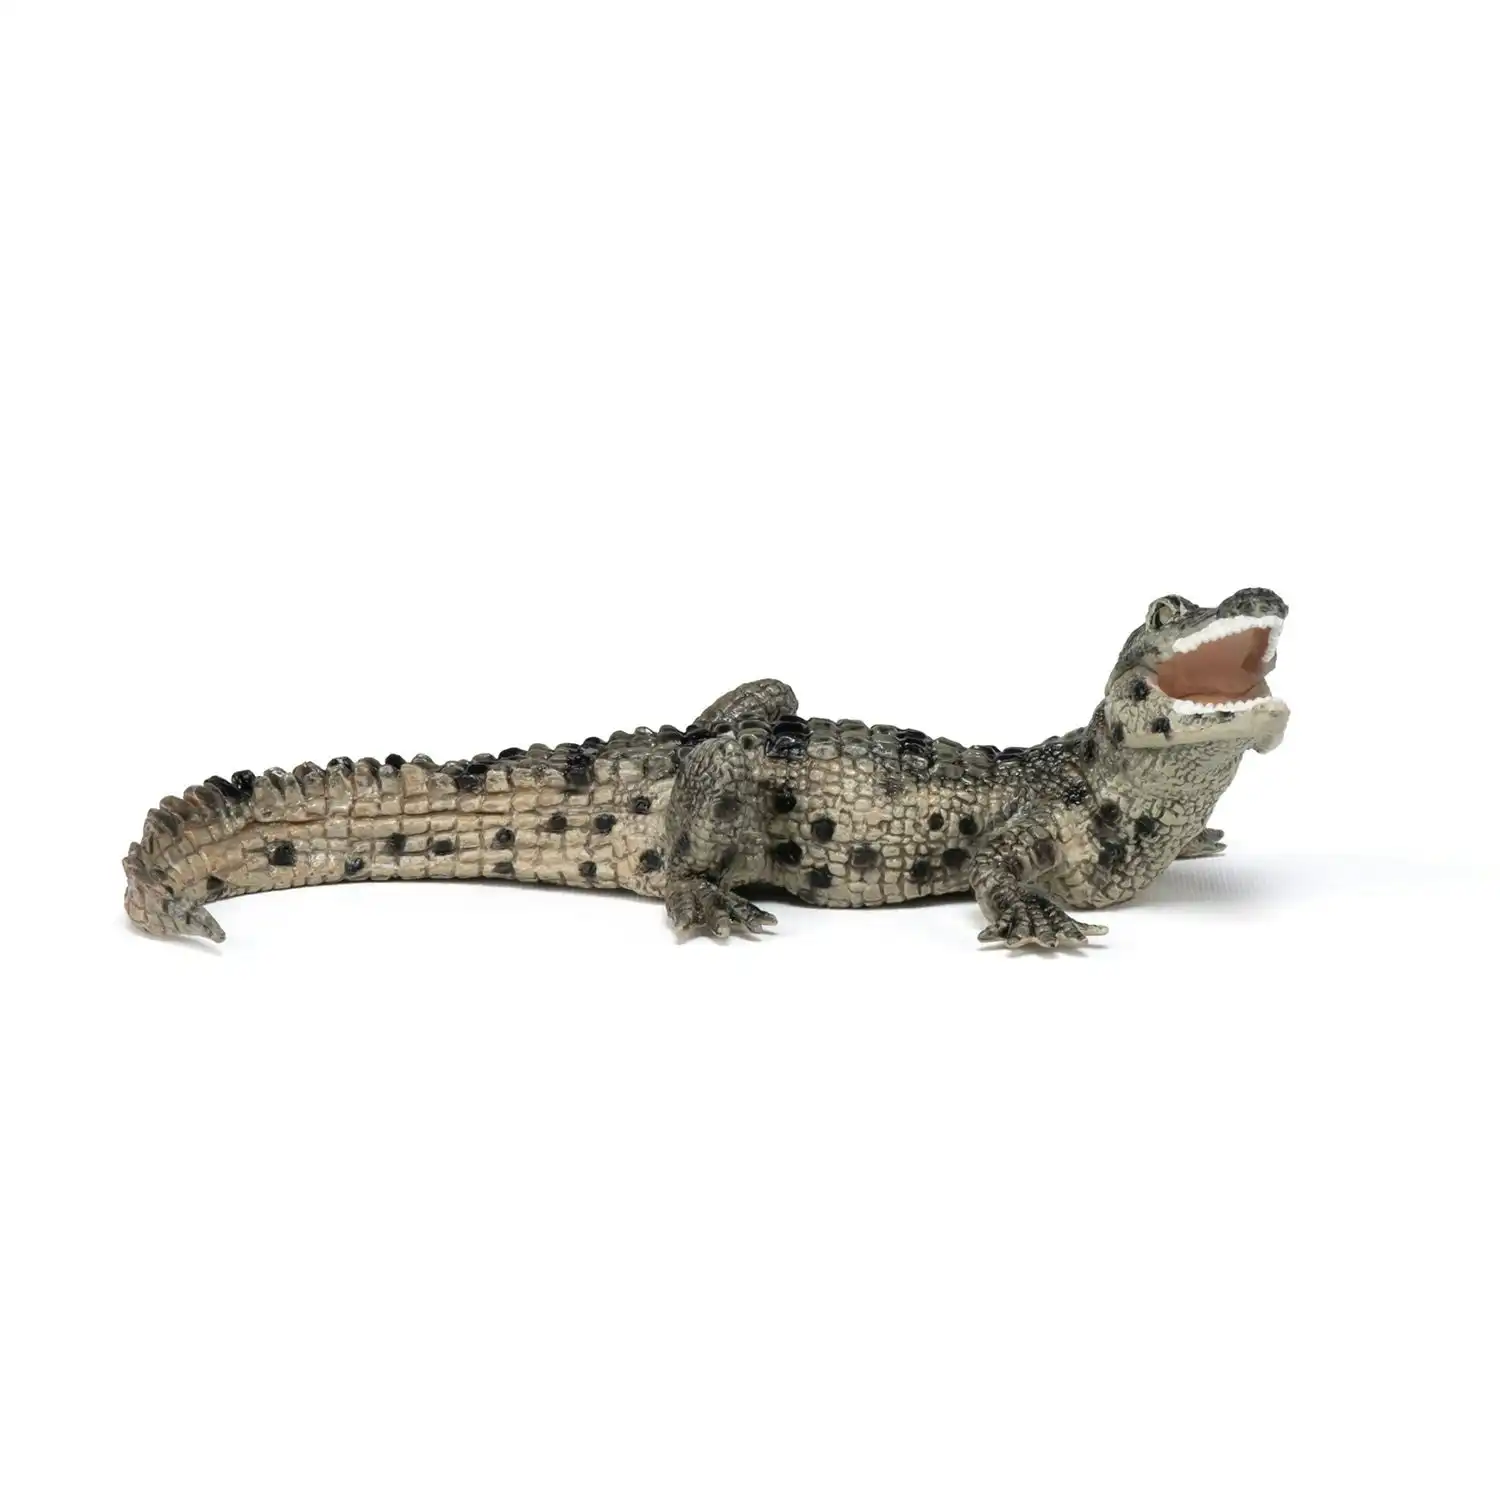 Papo - Baby crocodile Figurine